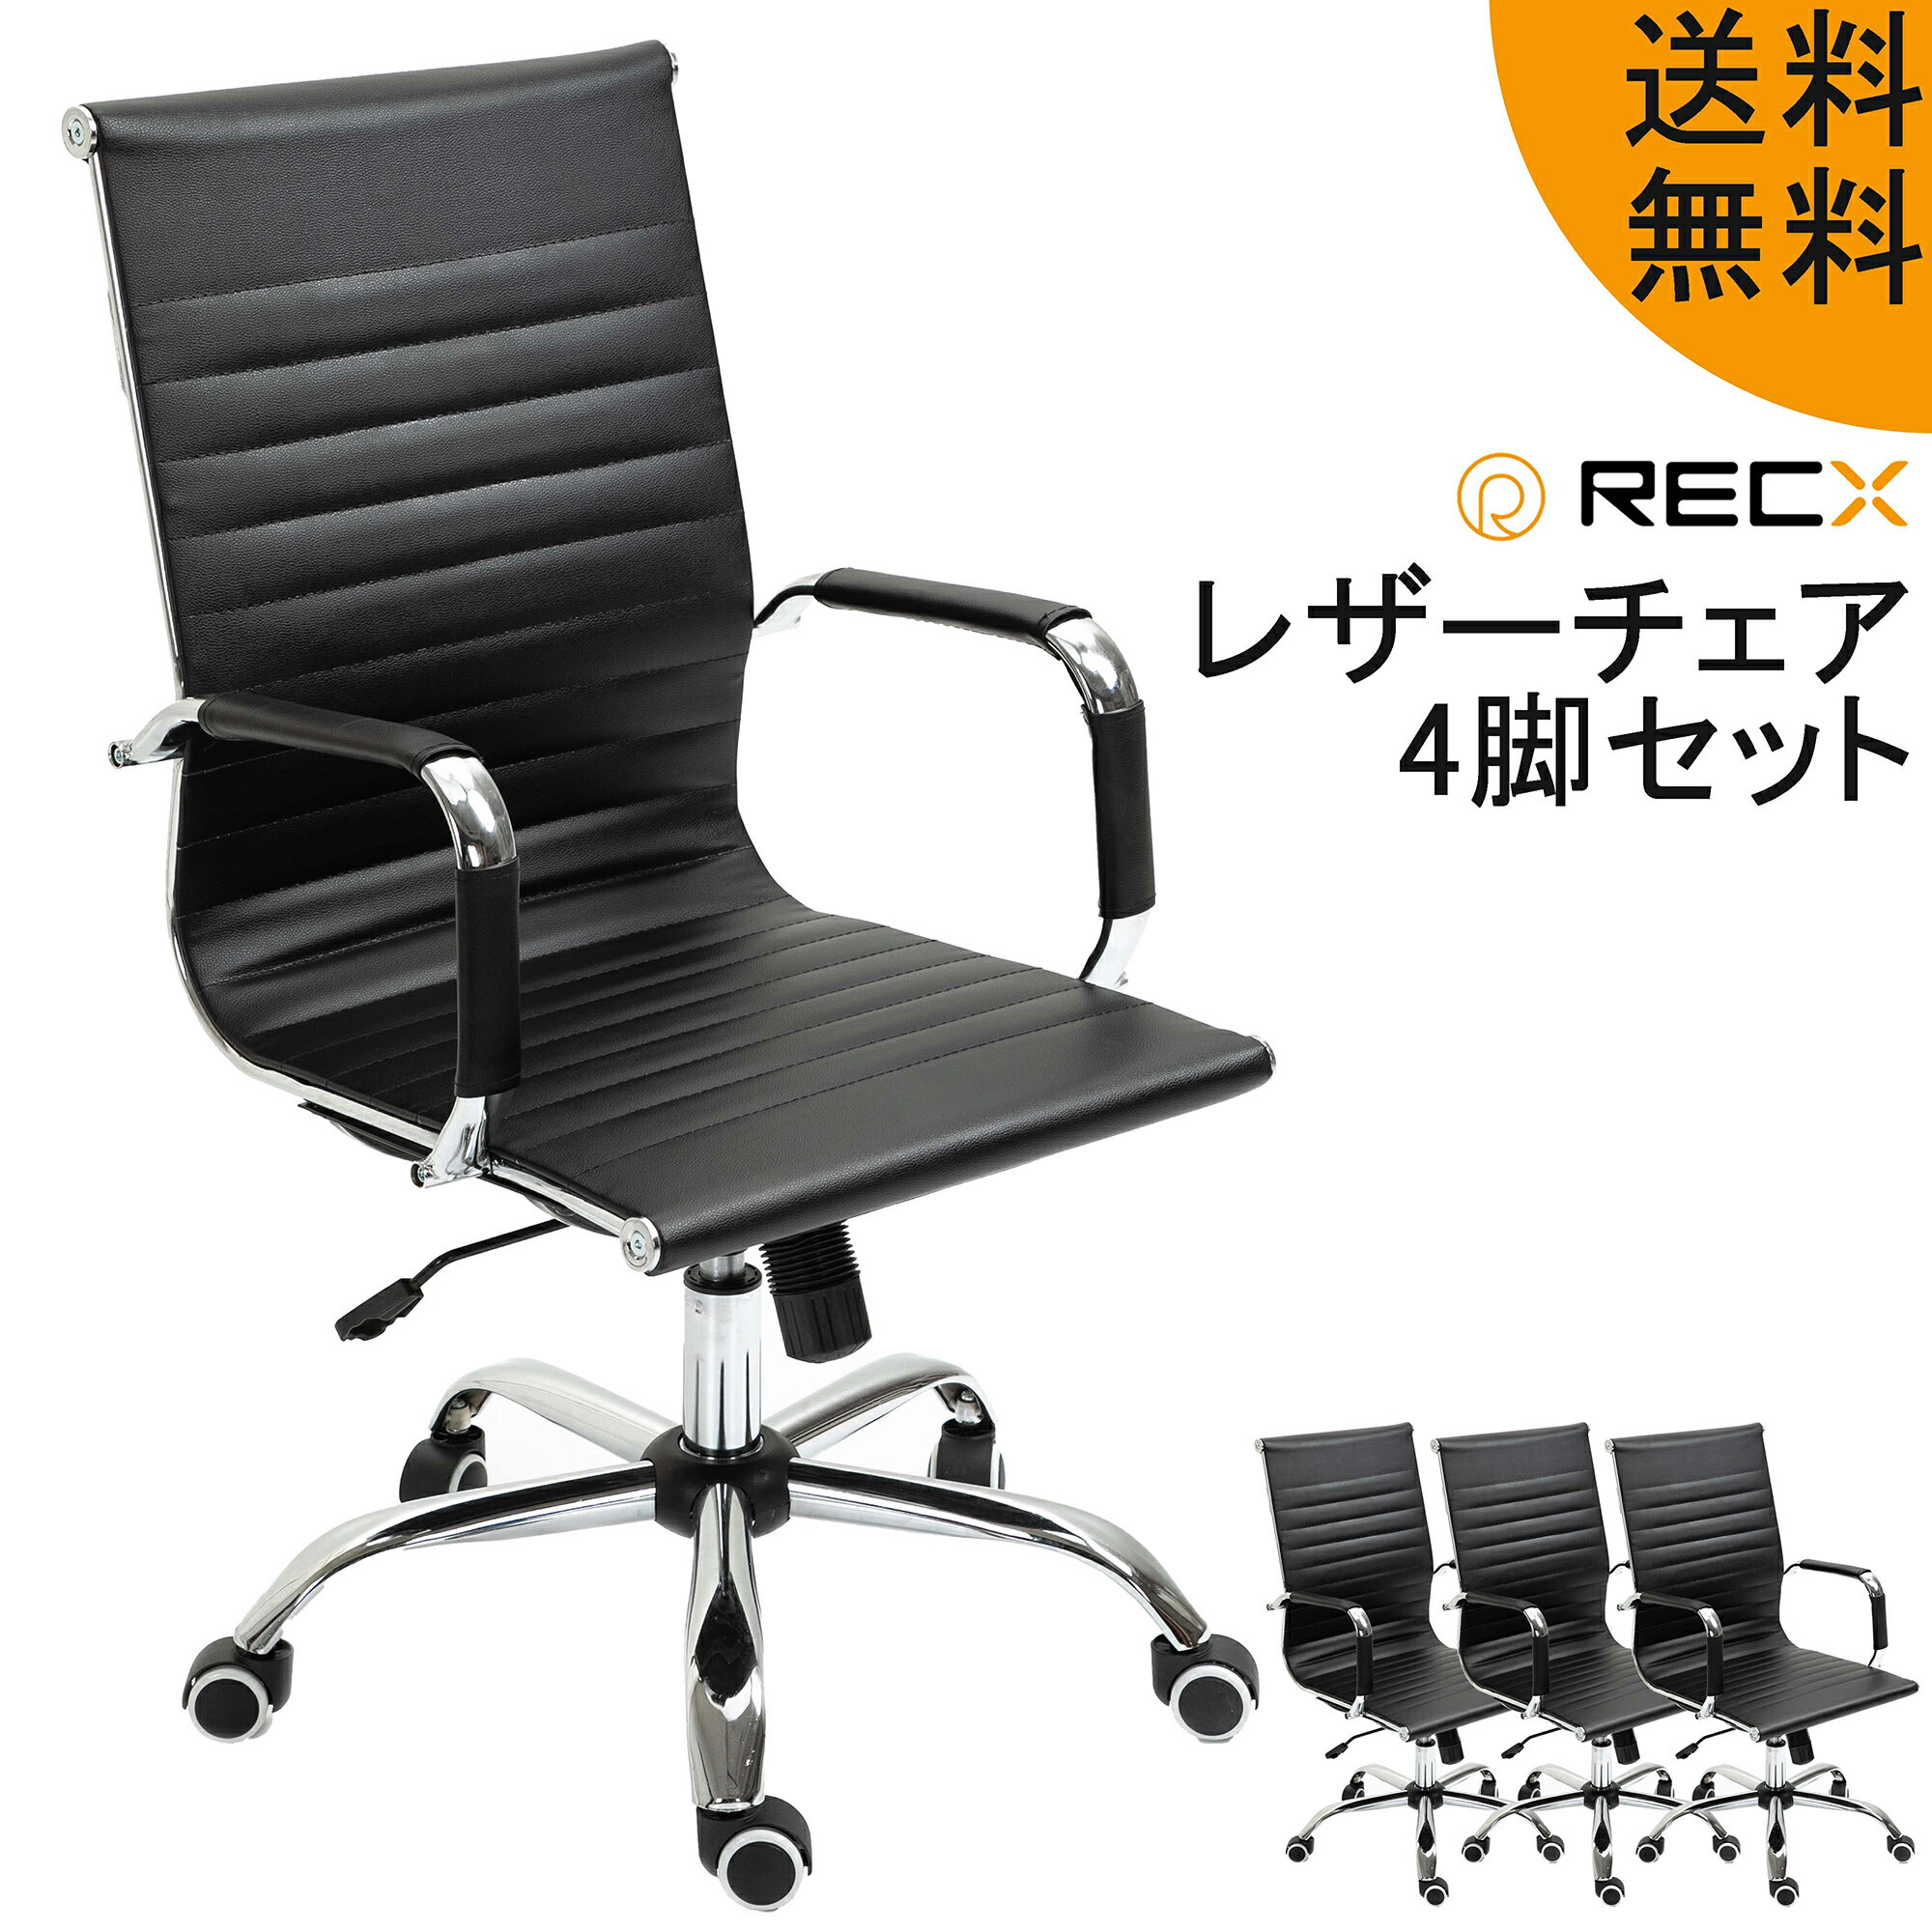 レザーチェア ソフトレザー ブラック 4脚 セット デスク オフィスチェア 麻雀 椅子